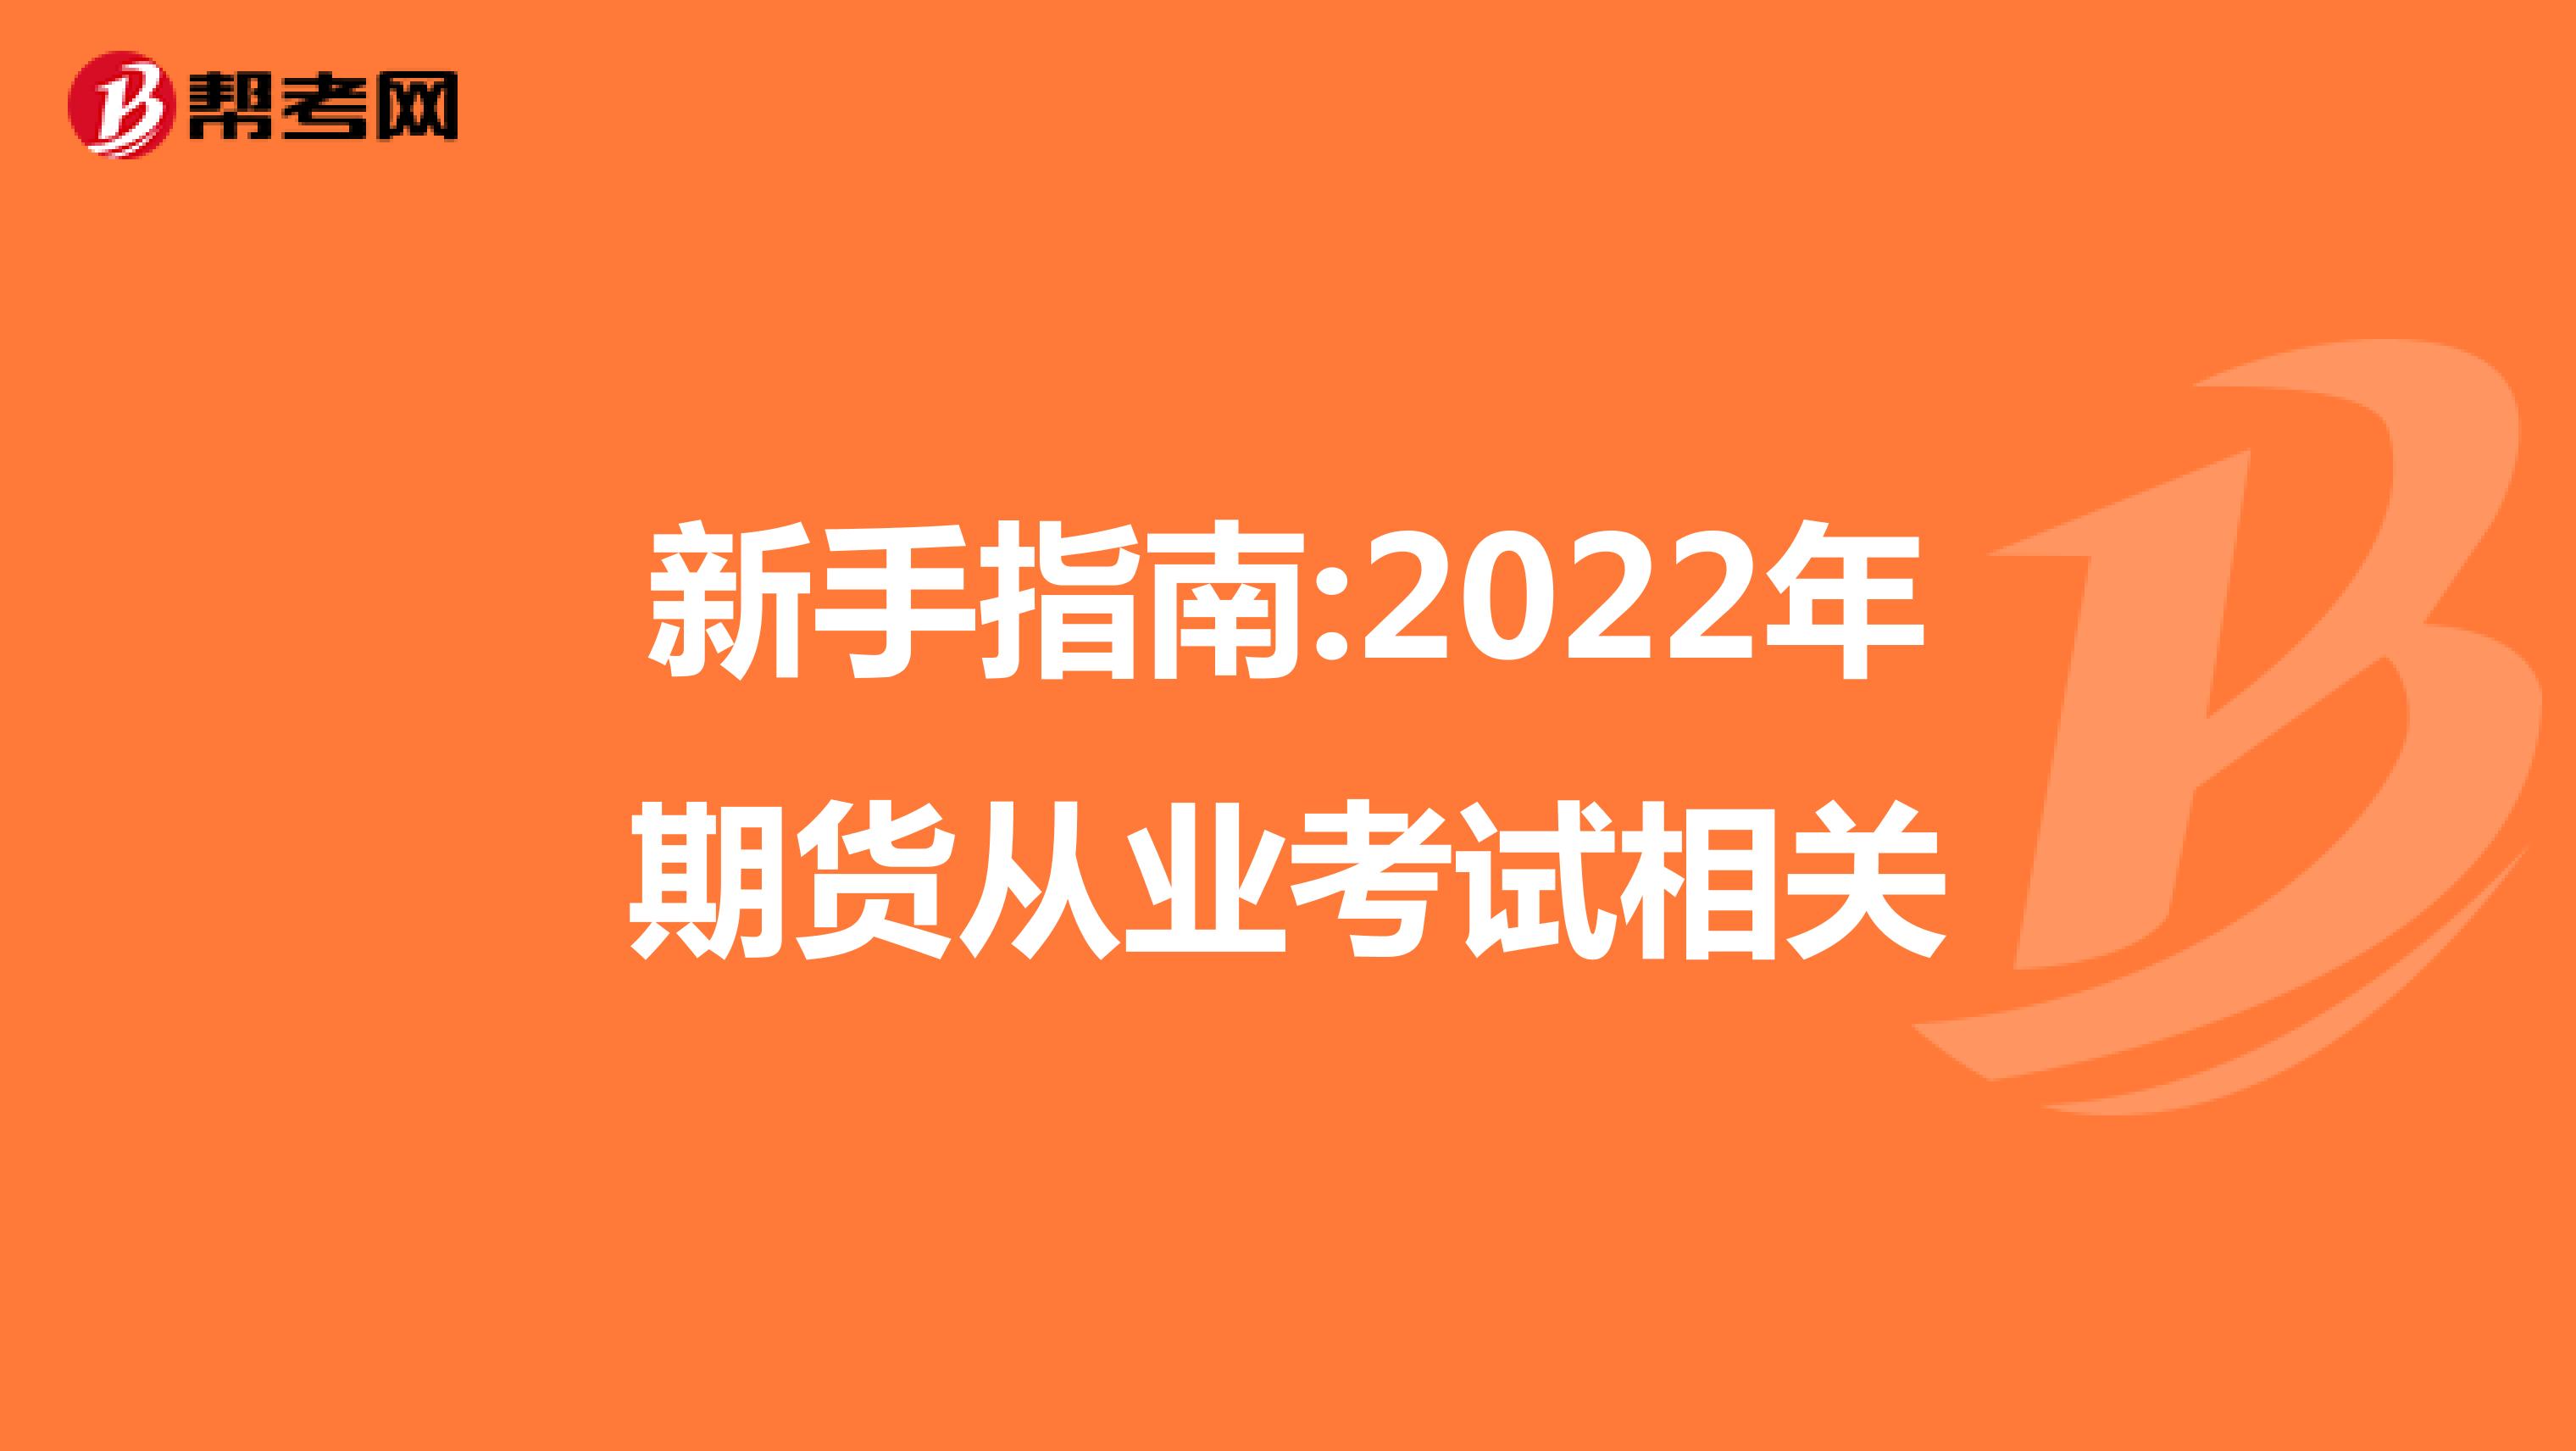 新手指南:2022年期货从业考试相关